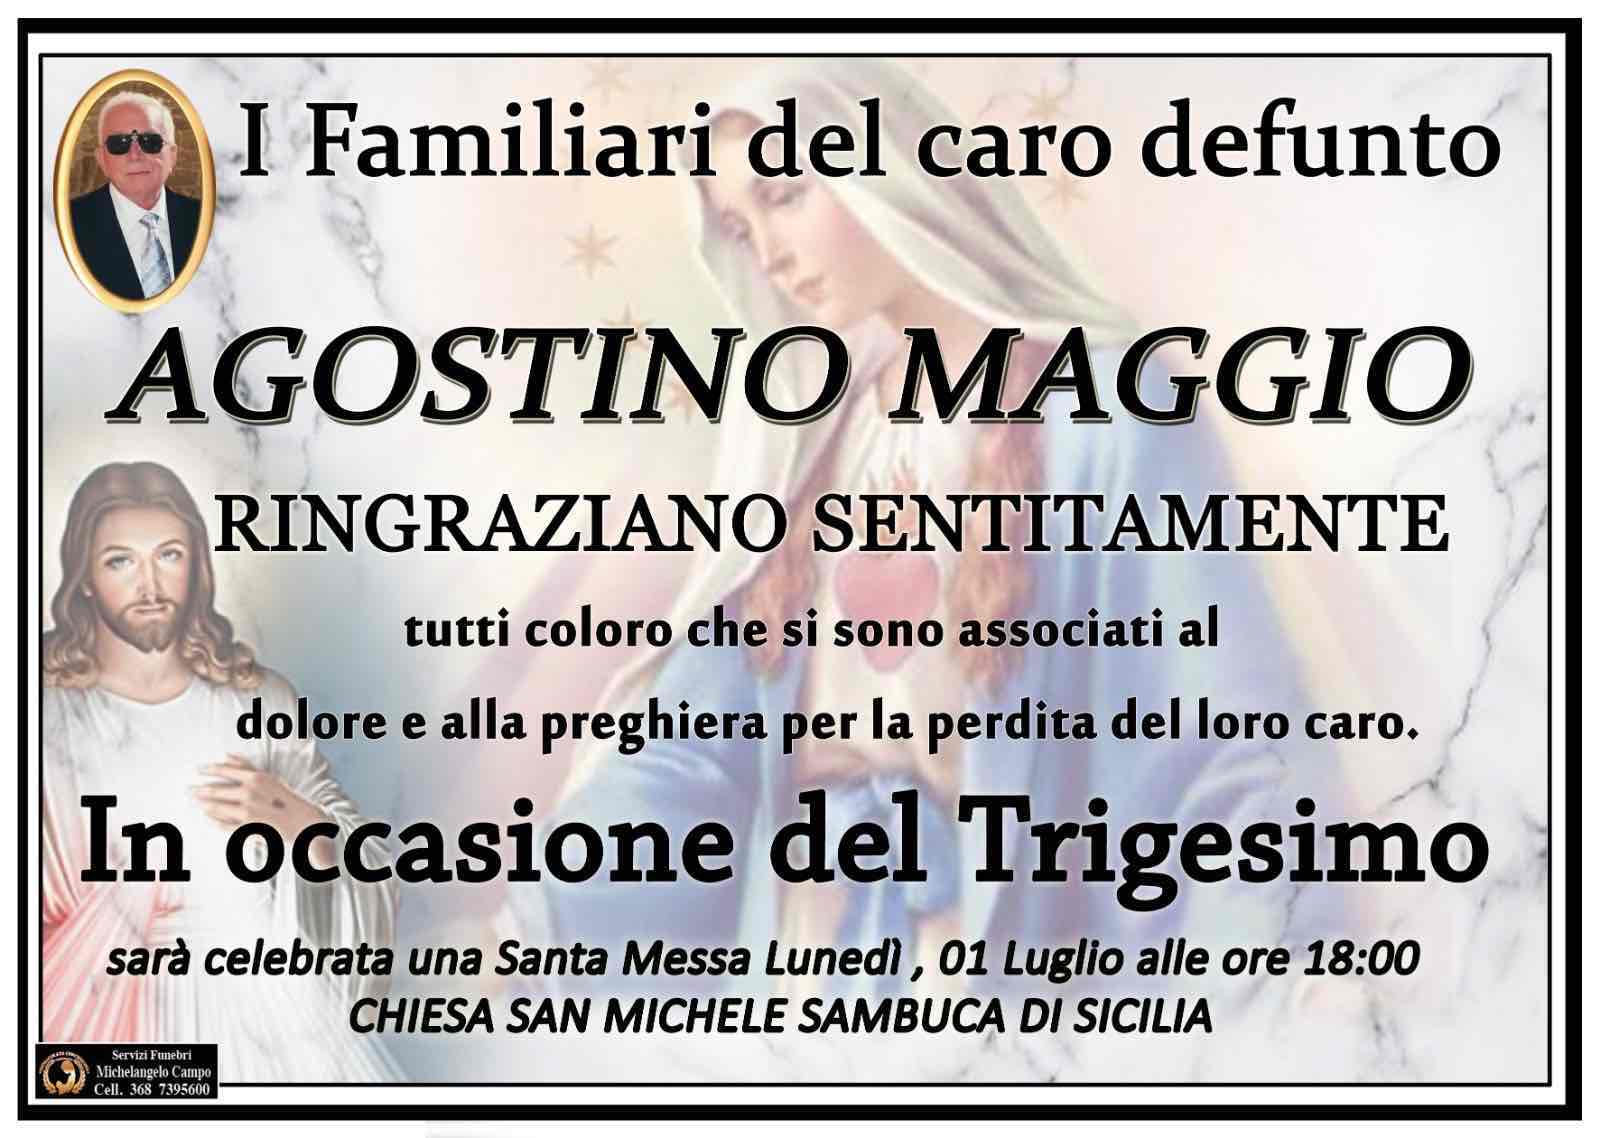 Agostino Maggio